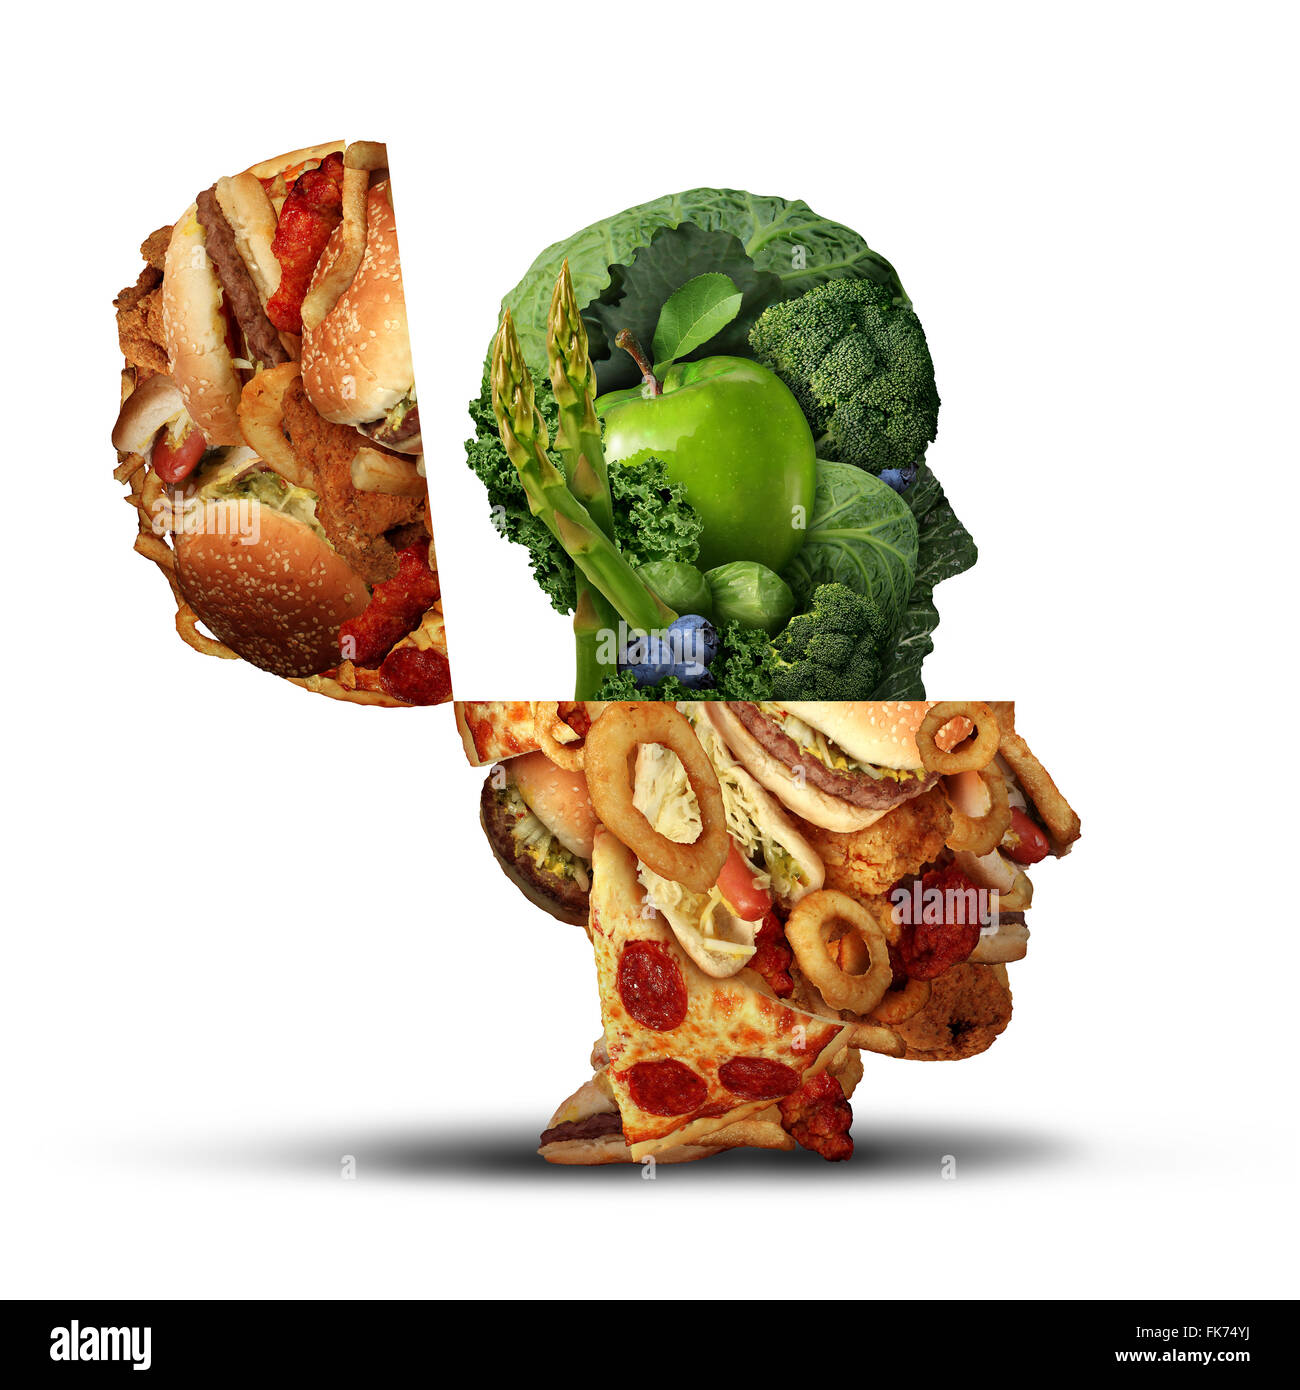 Changer de mode de vie sain Nutrition concept changer de mauvaises habitudes alimentaires et de la malbouffe malsaine pour les fruits et légumes frais sous forme d'une tête humaine comme une icône pour le nouveau vous en bonne santé. Banque D'Images